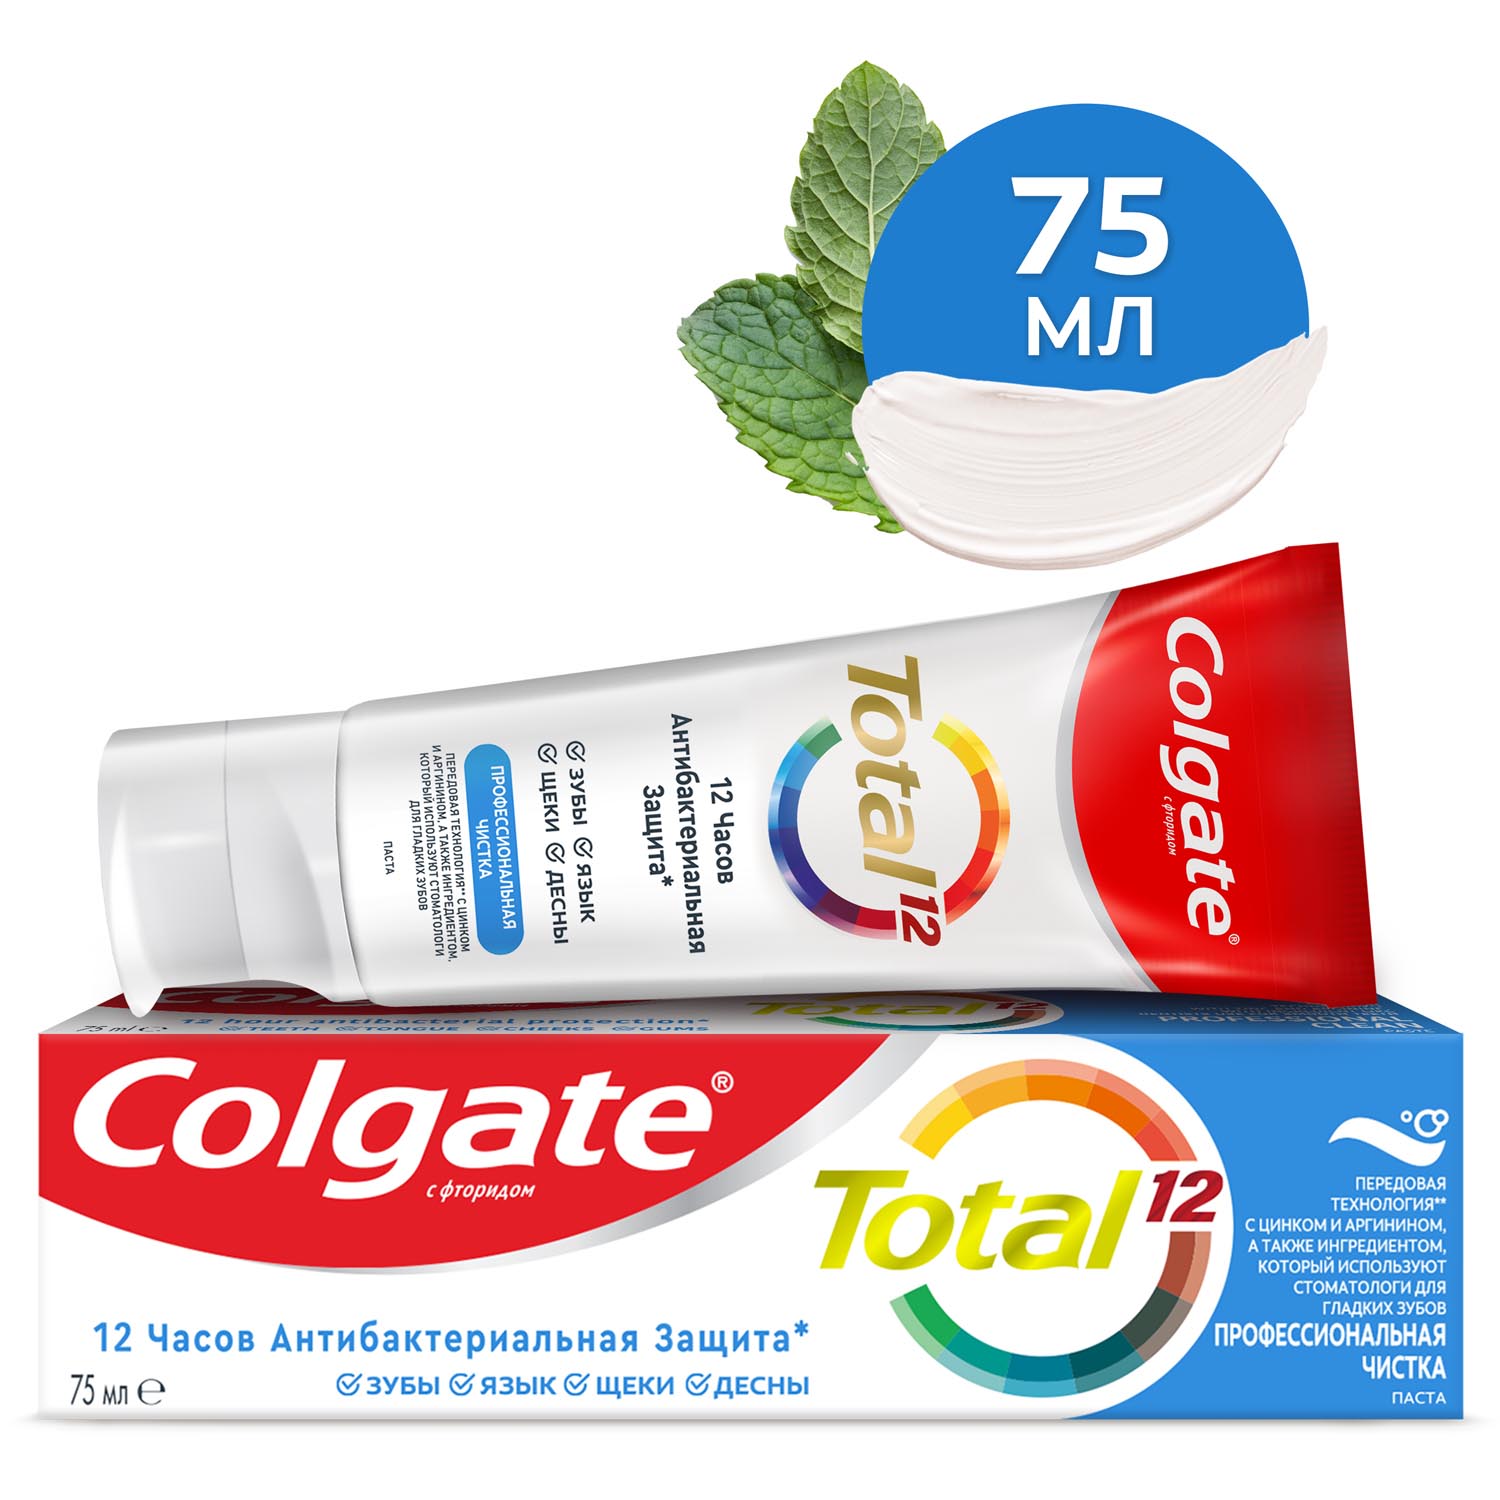 Зубная паста Colgate Total 12 Профессиональная Чистка с специальным ингредиентом для гладких и блестящих зубов, а также с цинком и аргинином для антибактериальной защиты всей полости рта в течение 12 часов, 75 мл комплексная зубная паста biomed gum health здоровье десен 100 г